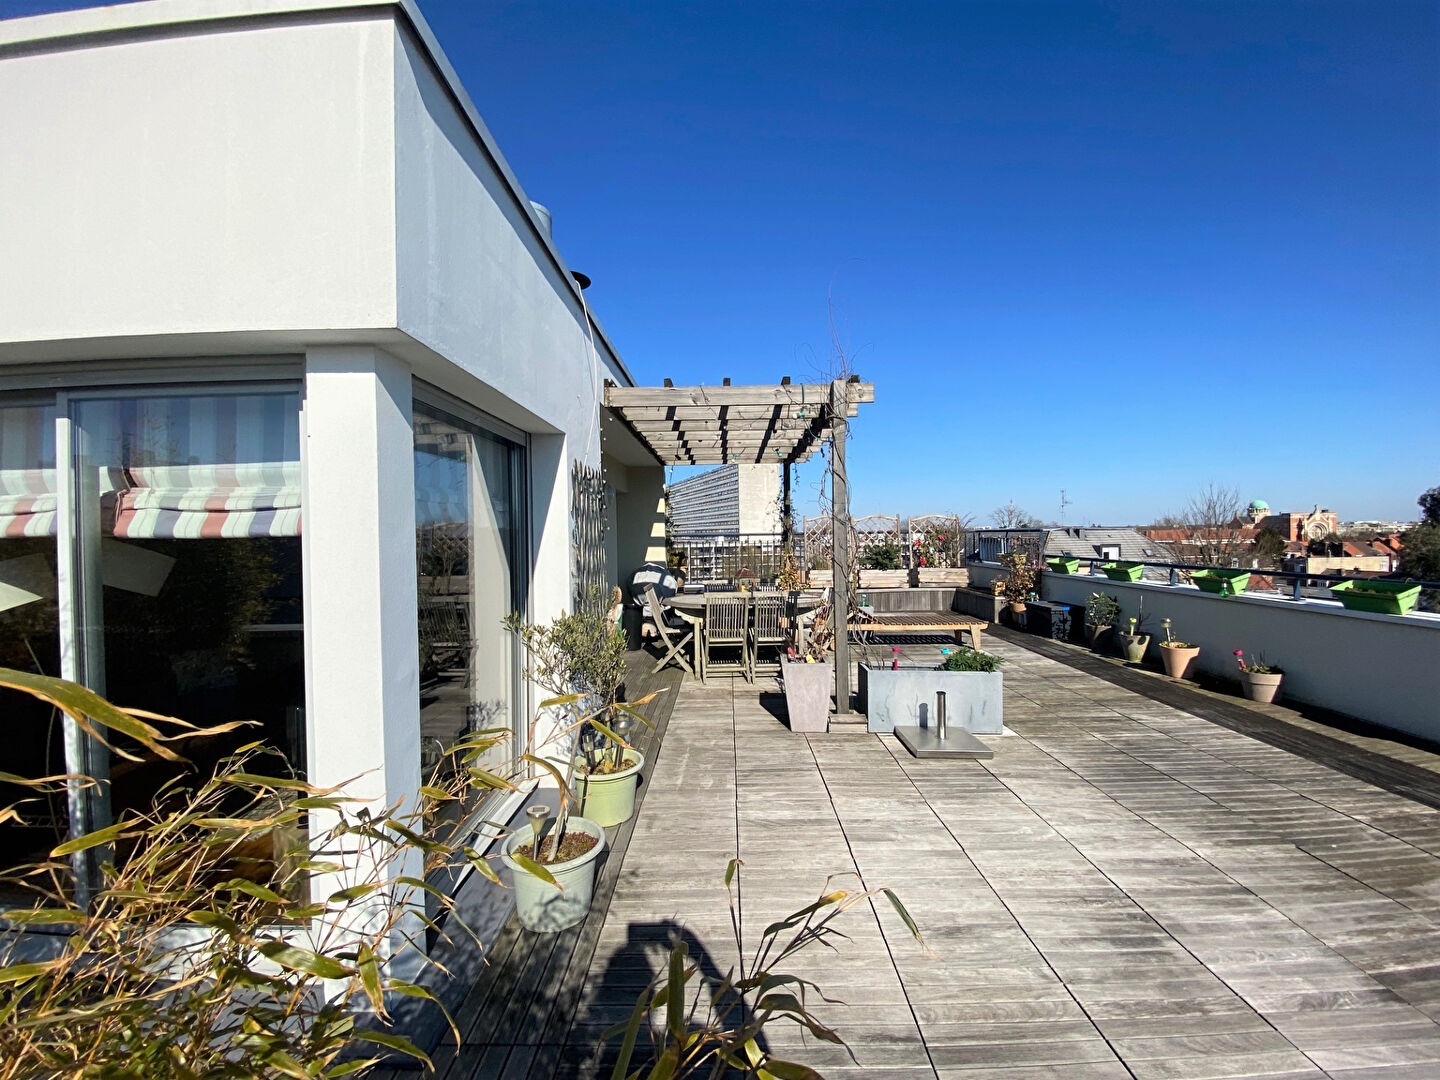 
Appartement  en rooftop Lille saint Maur, doté d'une terrasse panoramique de 65 m², 3 chambres, garage, cave et parking
